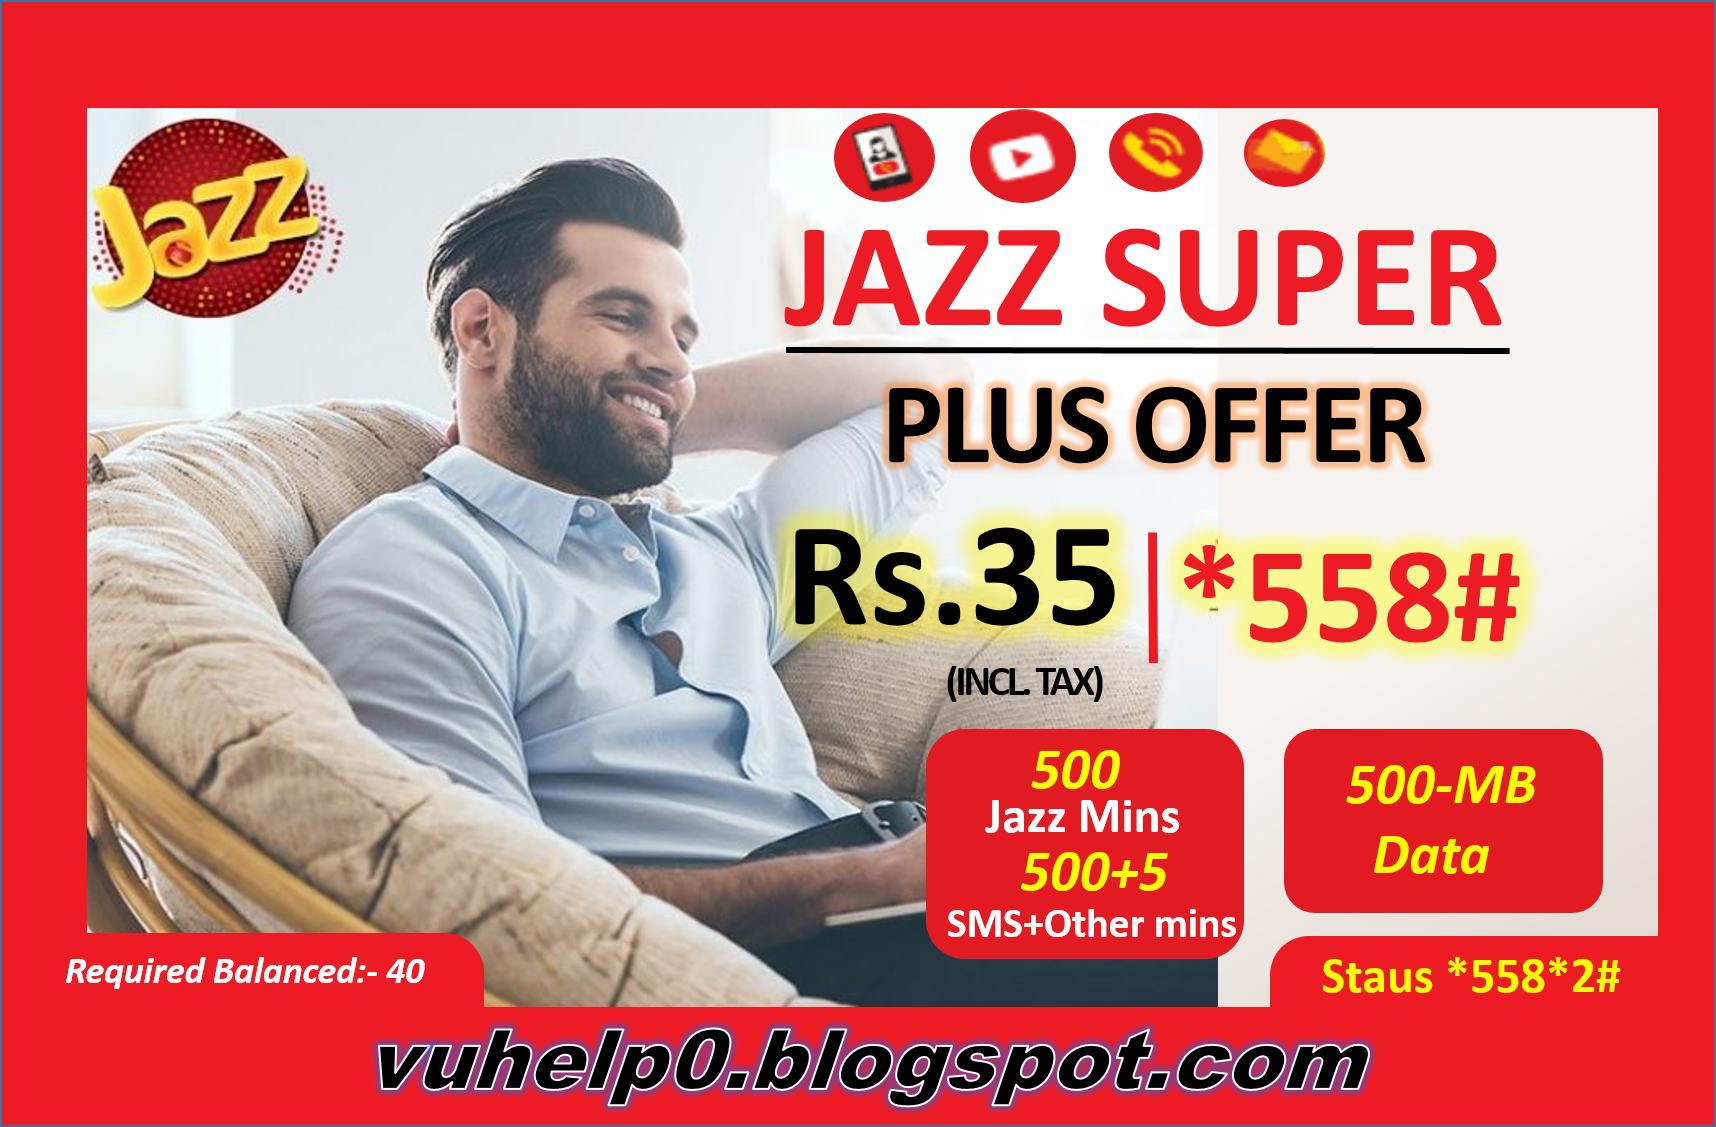 Jazz Super Plus Offer | Jazz *558# Offer